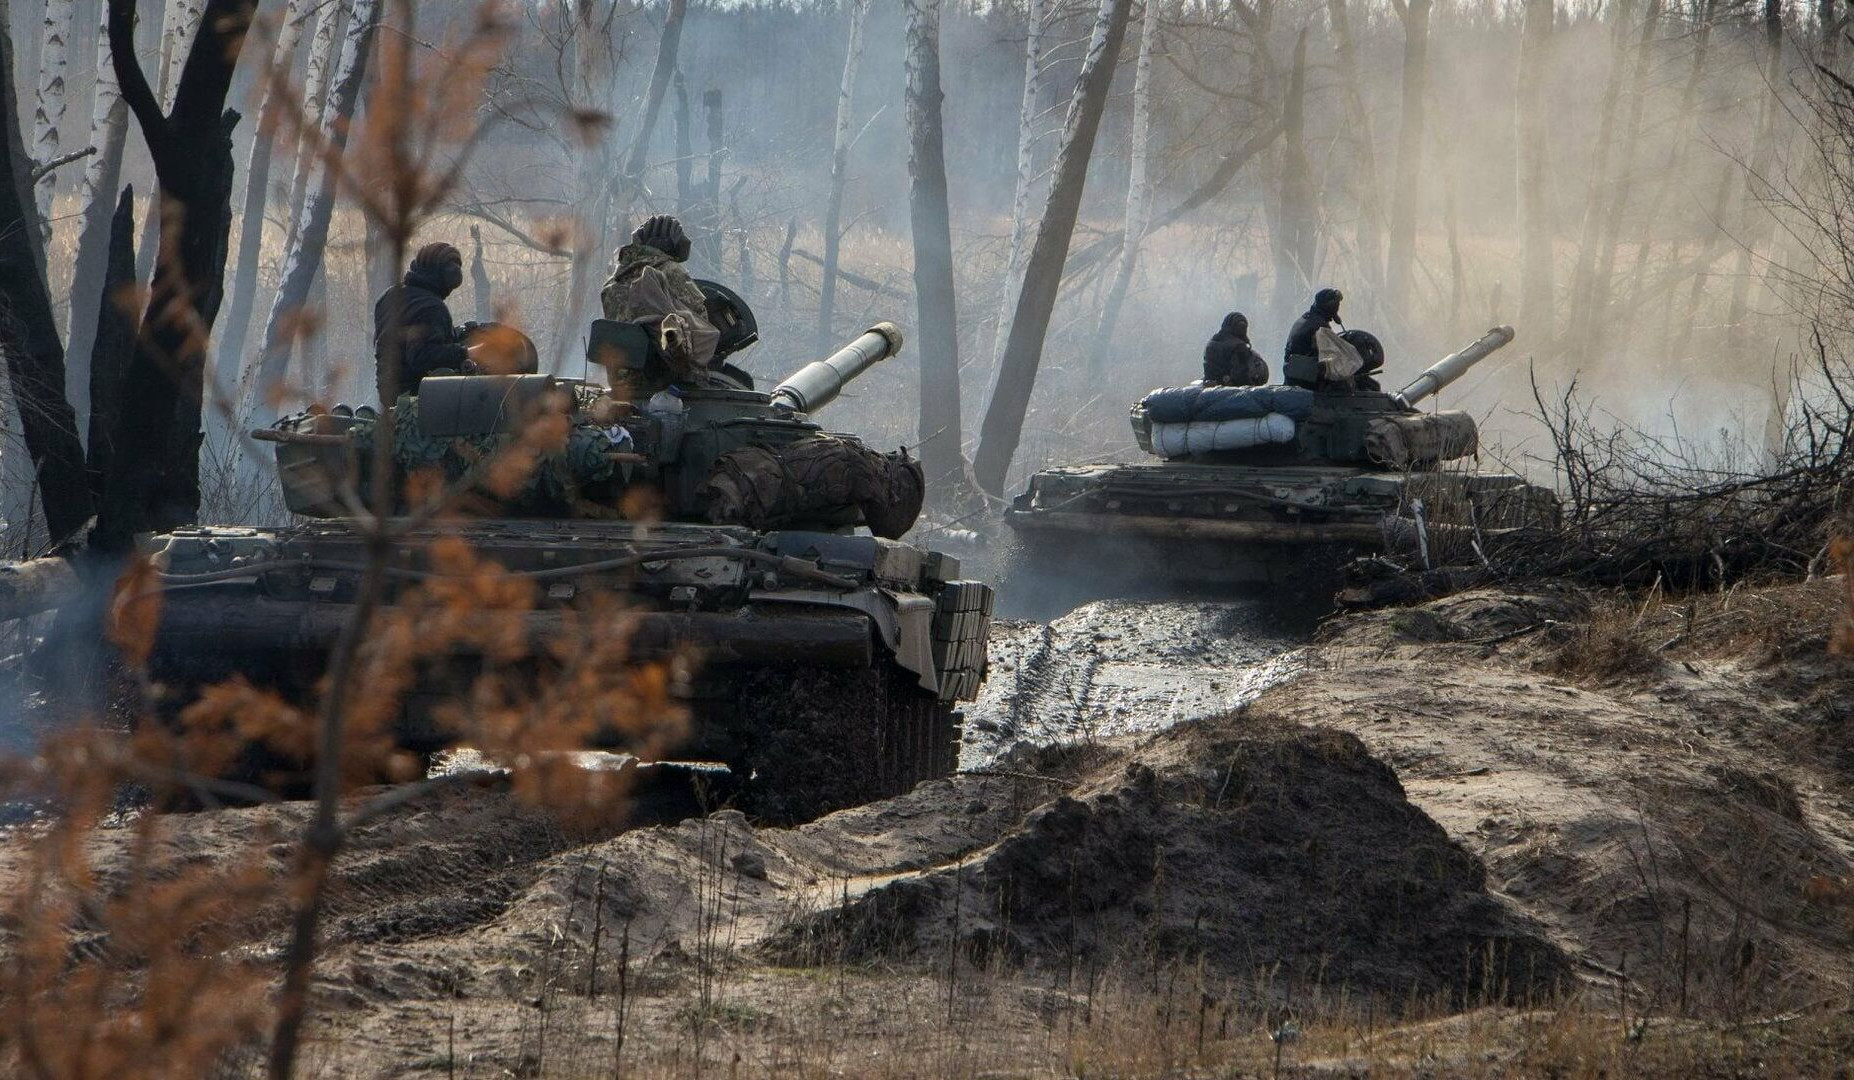 Ուկրաինայի պաշտպանության ուժերը պատրաստվում են հակահարձակման. Ռեզնիկով